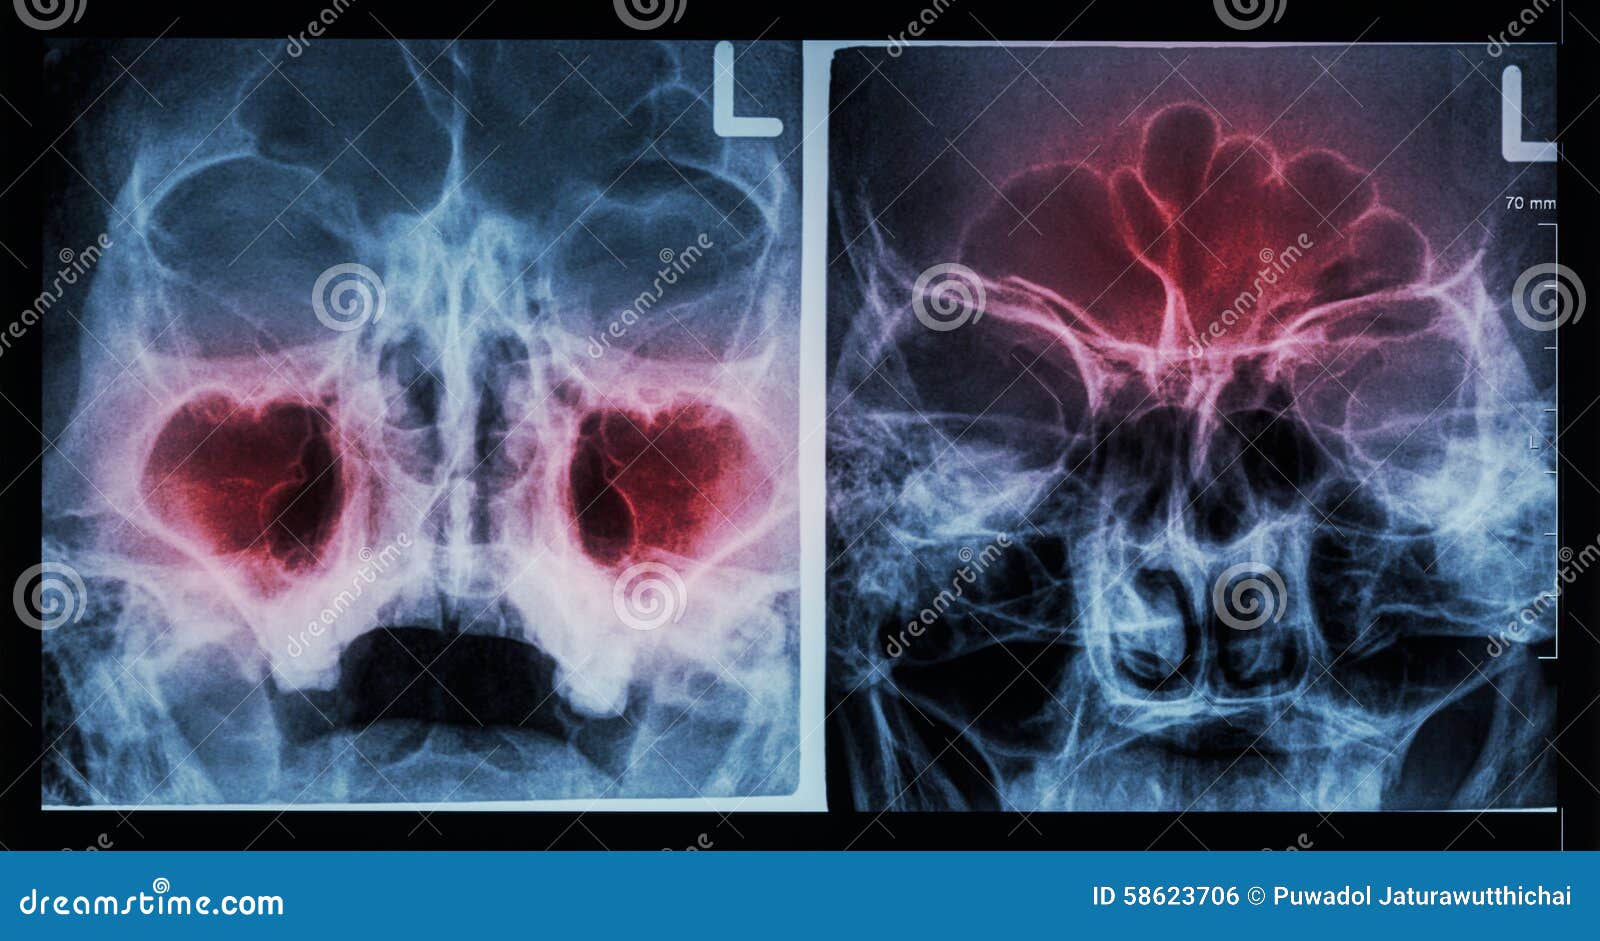 film x-ray paranasal sinus : show sinusitis at maxillary sinus ( left image ) , frontal sinus ( right image )